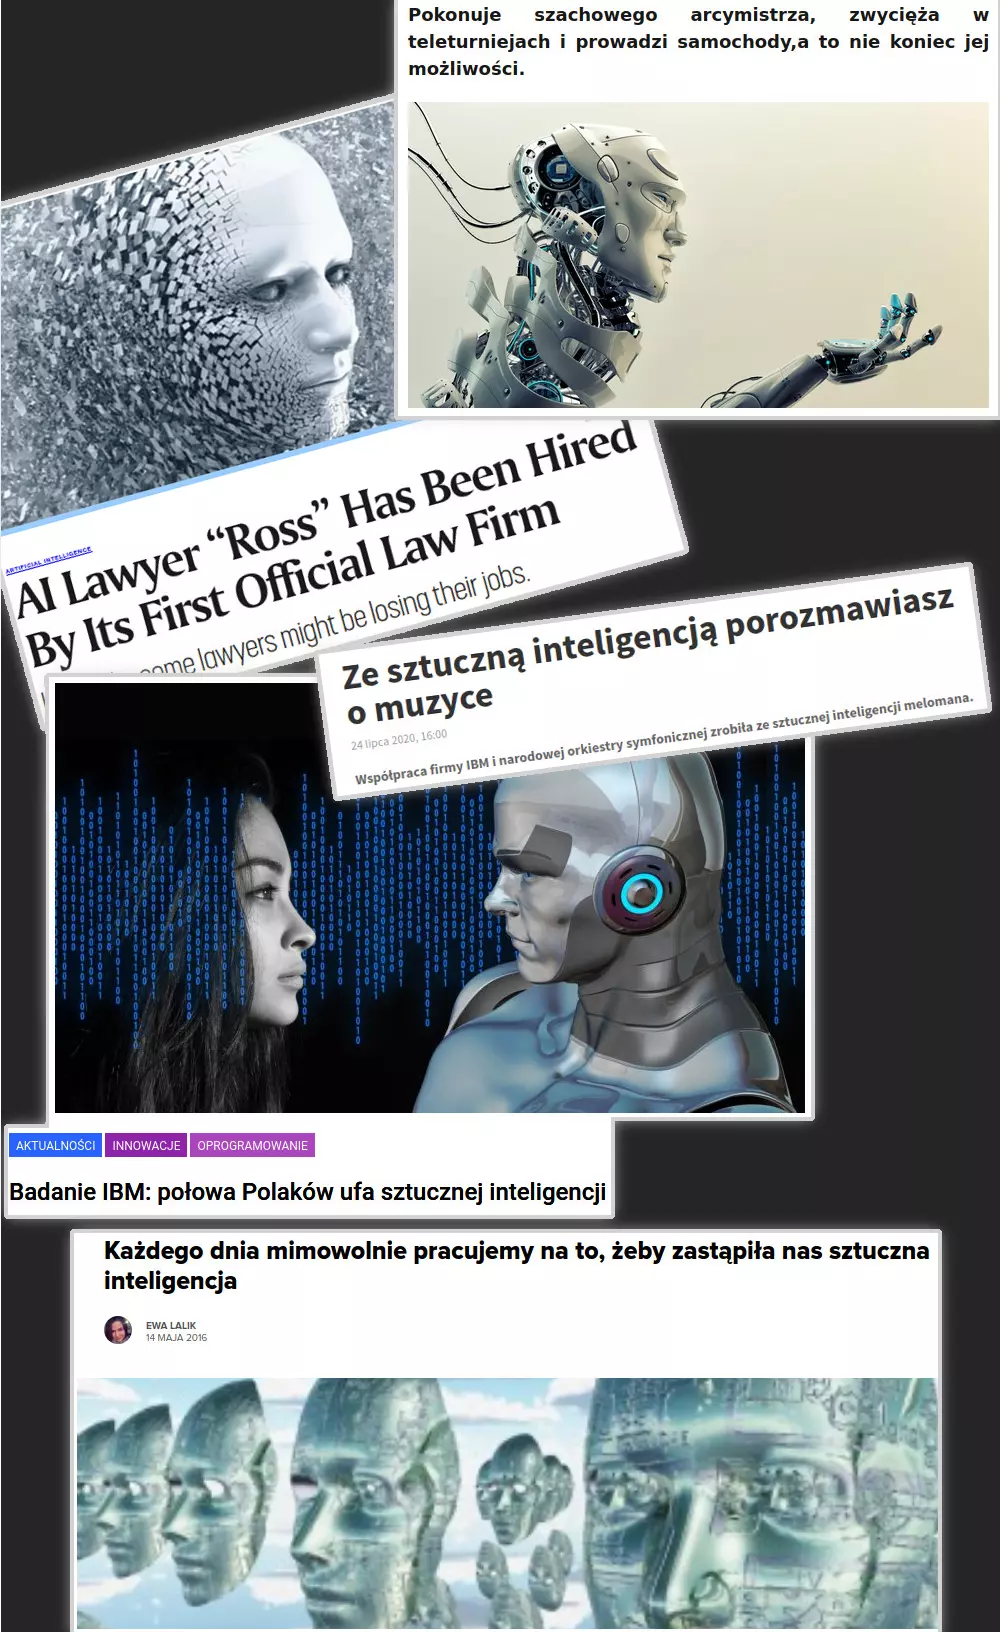 Kolaż z pięciu nagłówków prasowych na temat AI. Na wielu z nich są Stockowe zdjęcia twarzy robota. Podpisy mówią między innymi, że sztuczna inteligencja zwycięża w teleturniejach, że porozmawiasz z nią o muzyce, że powstał pierwszy prawnik-robot, że według badania IBM połowa Polaków ufa sztucznej inteligencji i że każdego dnia pracujemy na to, żeby zastąpiła nas sztuczna inteligencja.